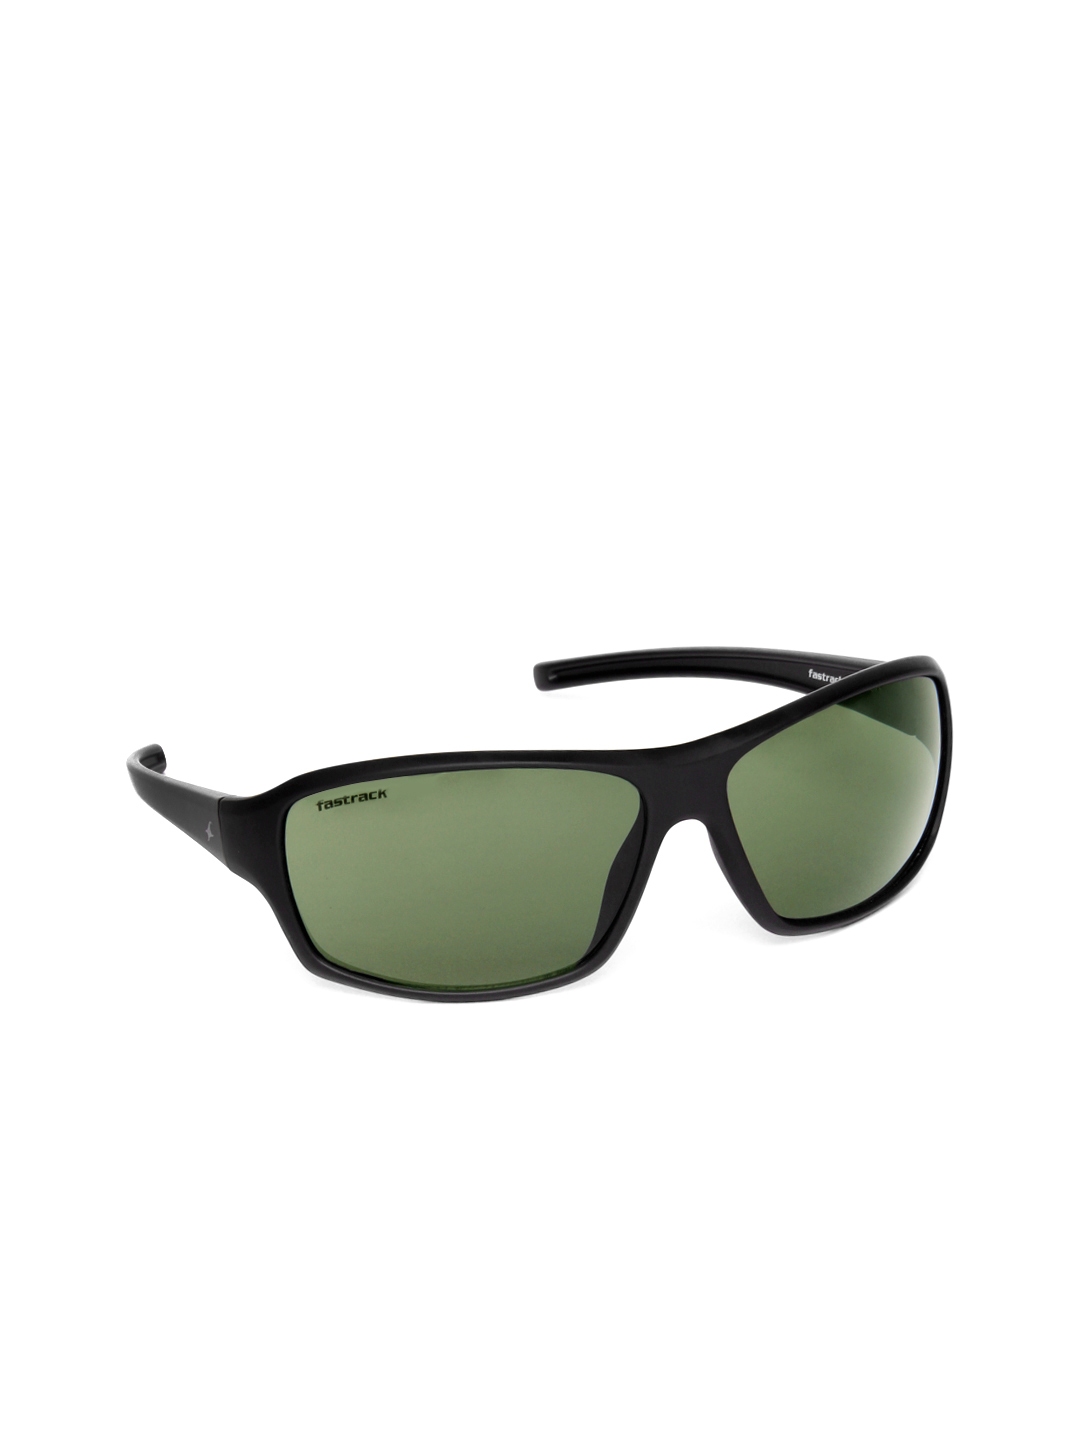 Buy Fastrack Men Sunglasses P222GR1 - Sunglasses for Men 493219